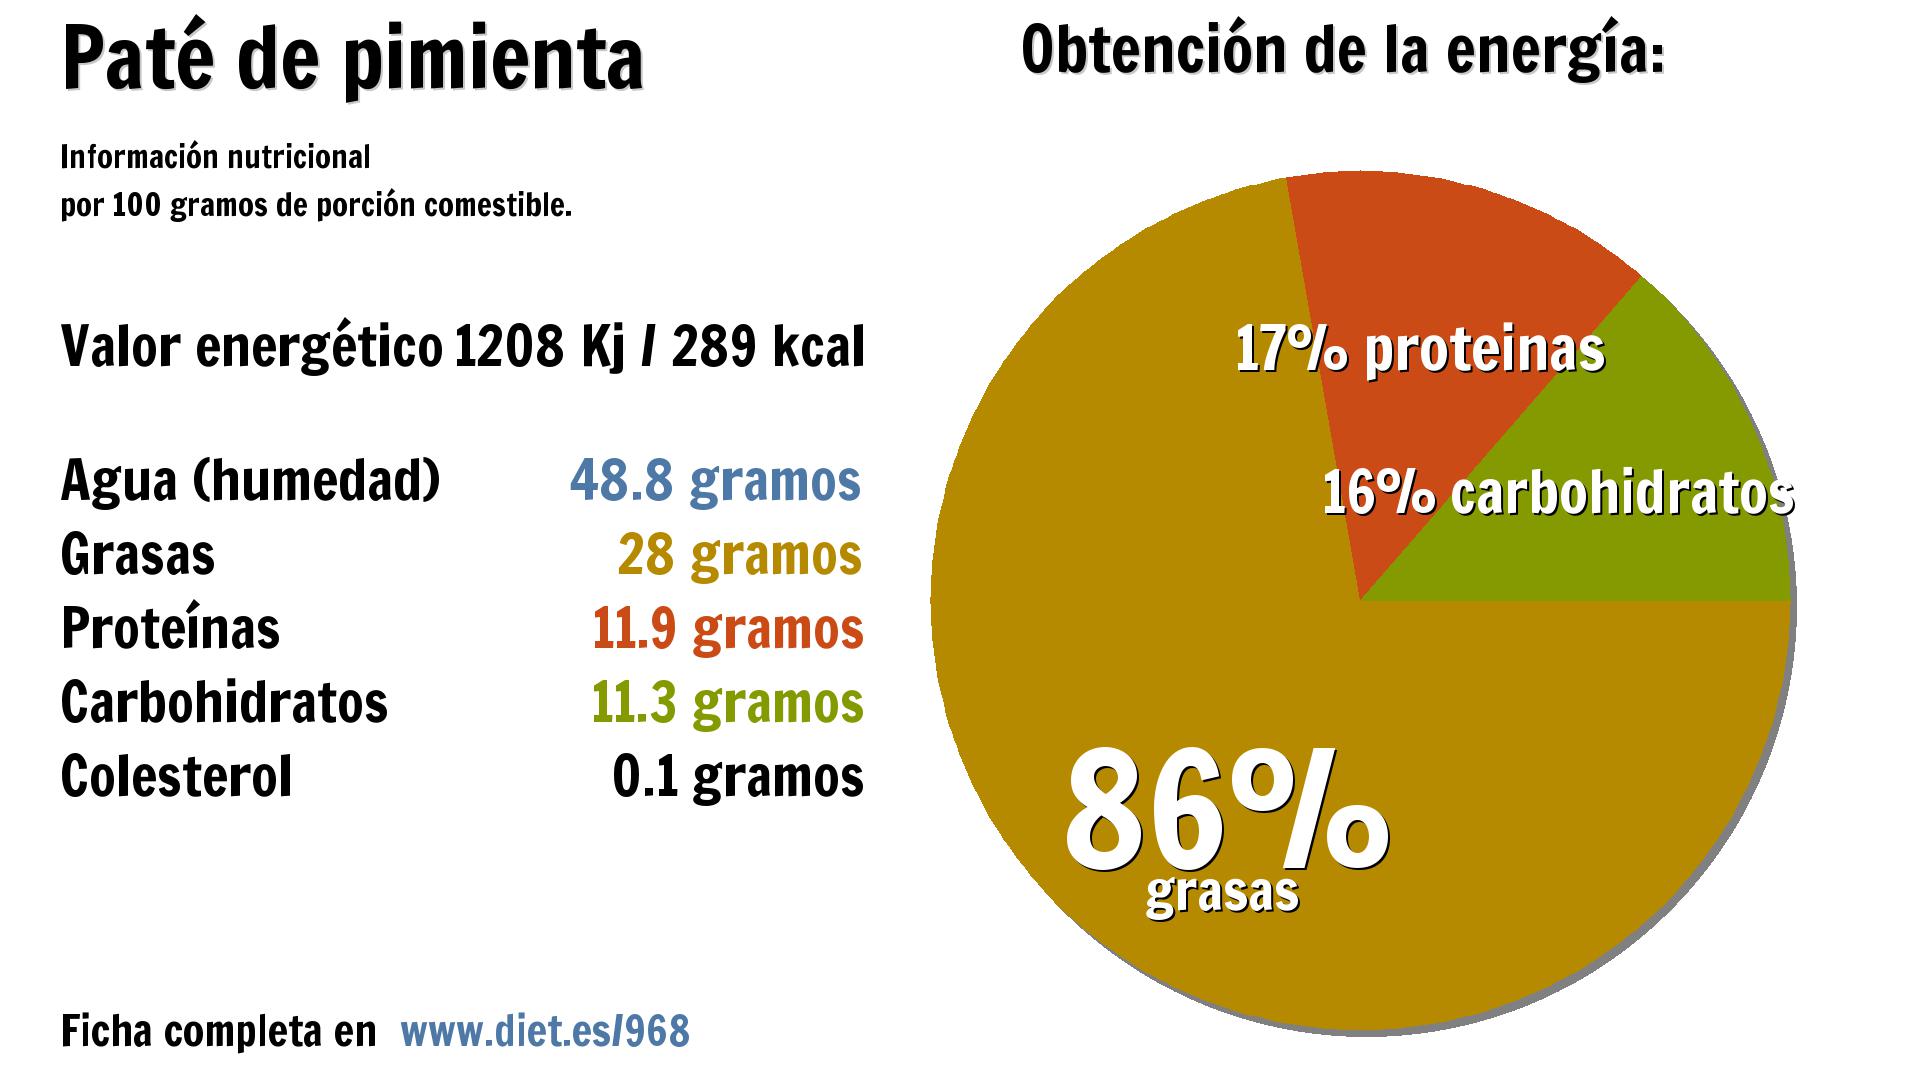 Paté de pimienta: energía 1208 Kj, agua 49 g., grasas 28 g., proteínas 12 g. y carbohidratos 11 g.